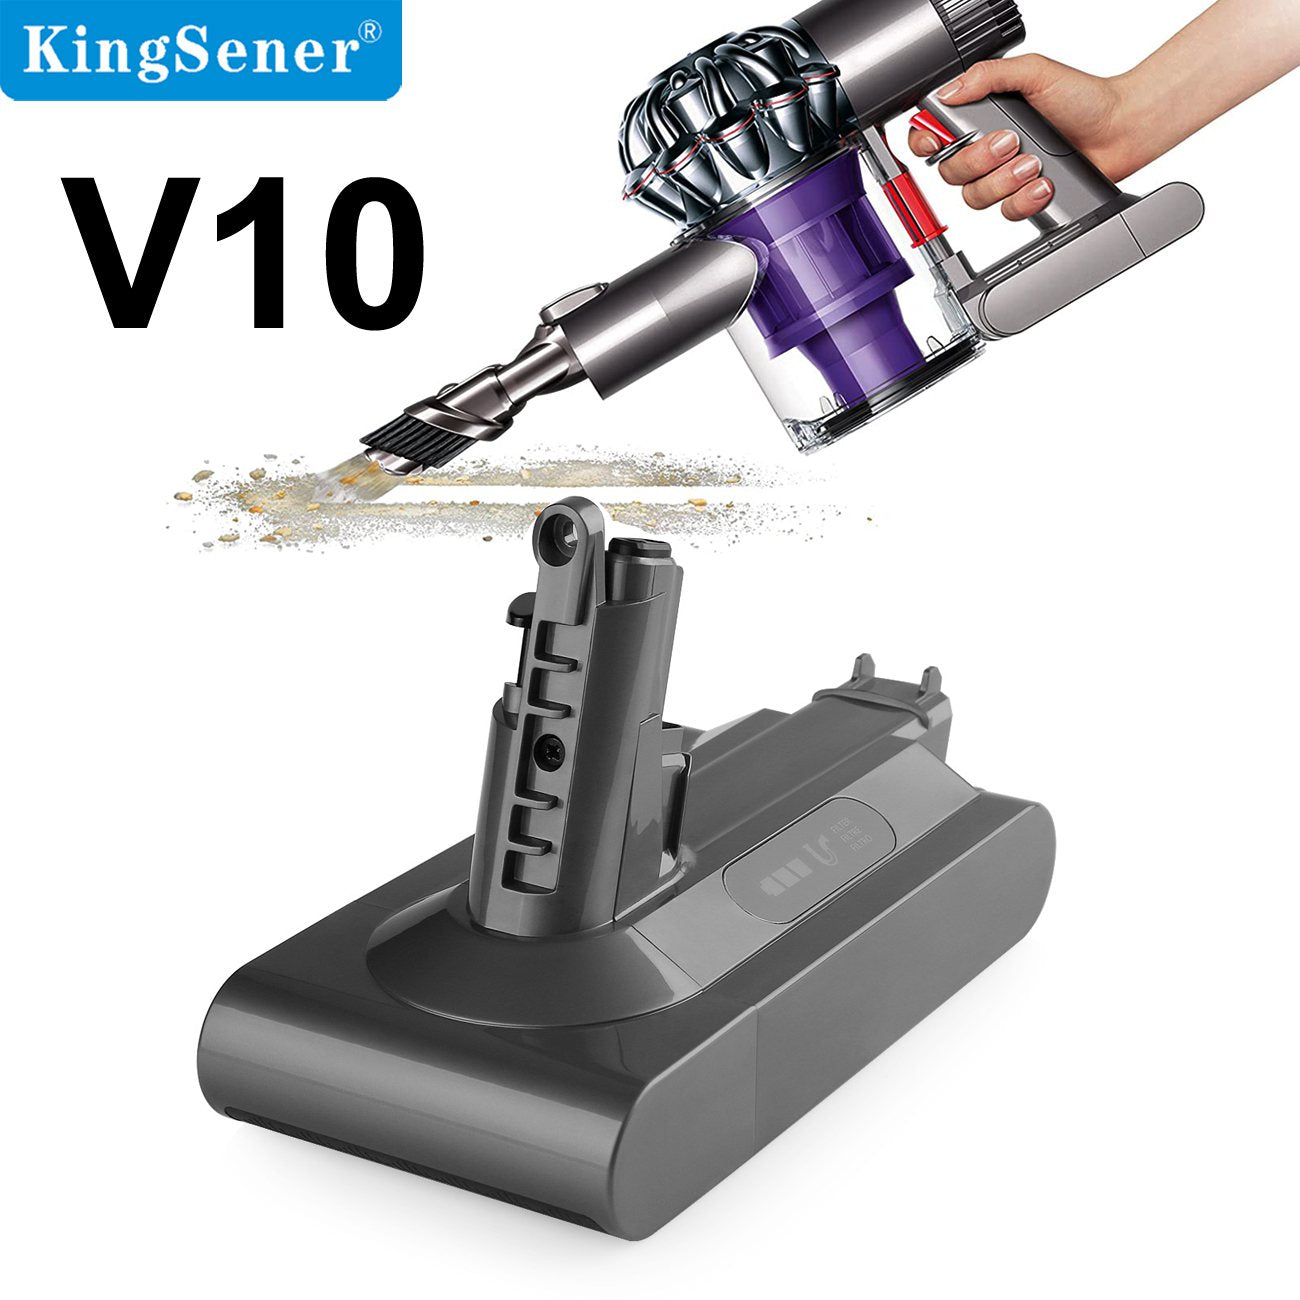 Kingsener 4000mAh/3000mAh Vacuum Cleaner Battery For Dyson V10